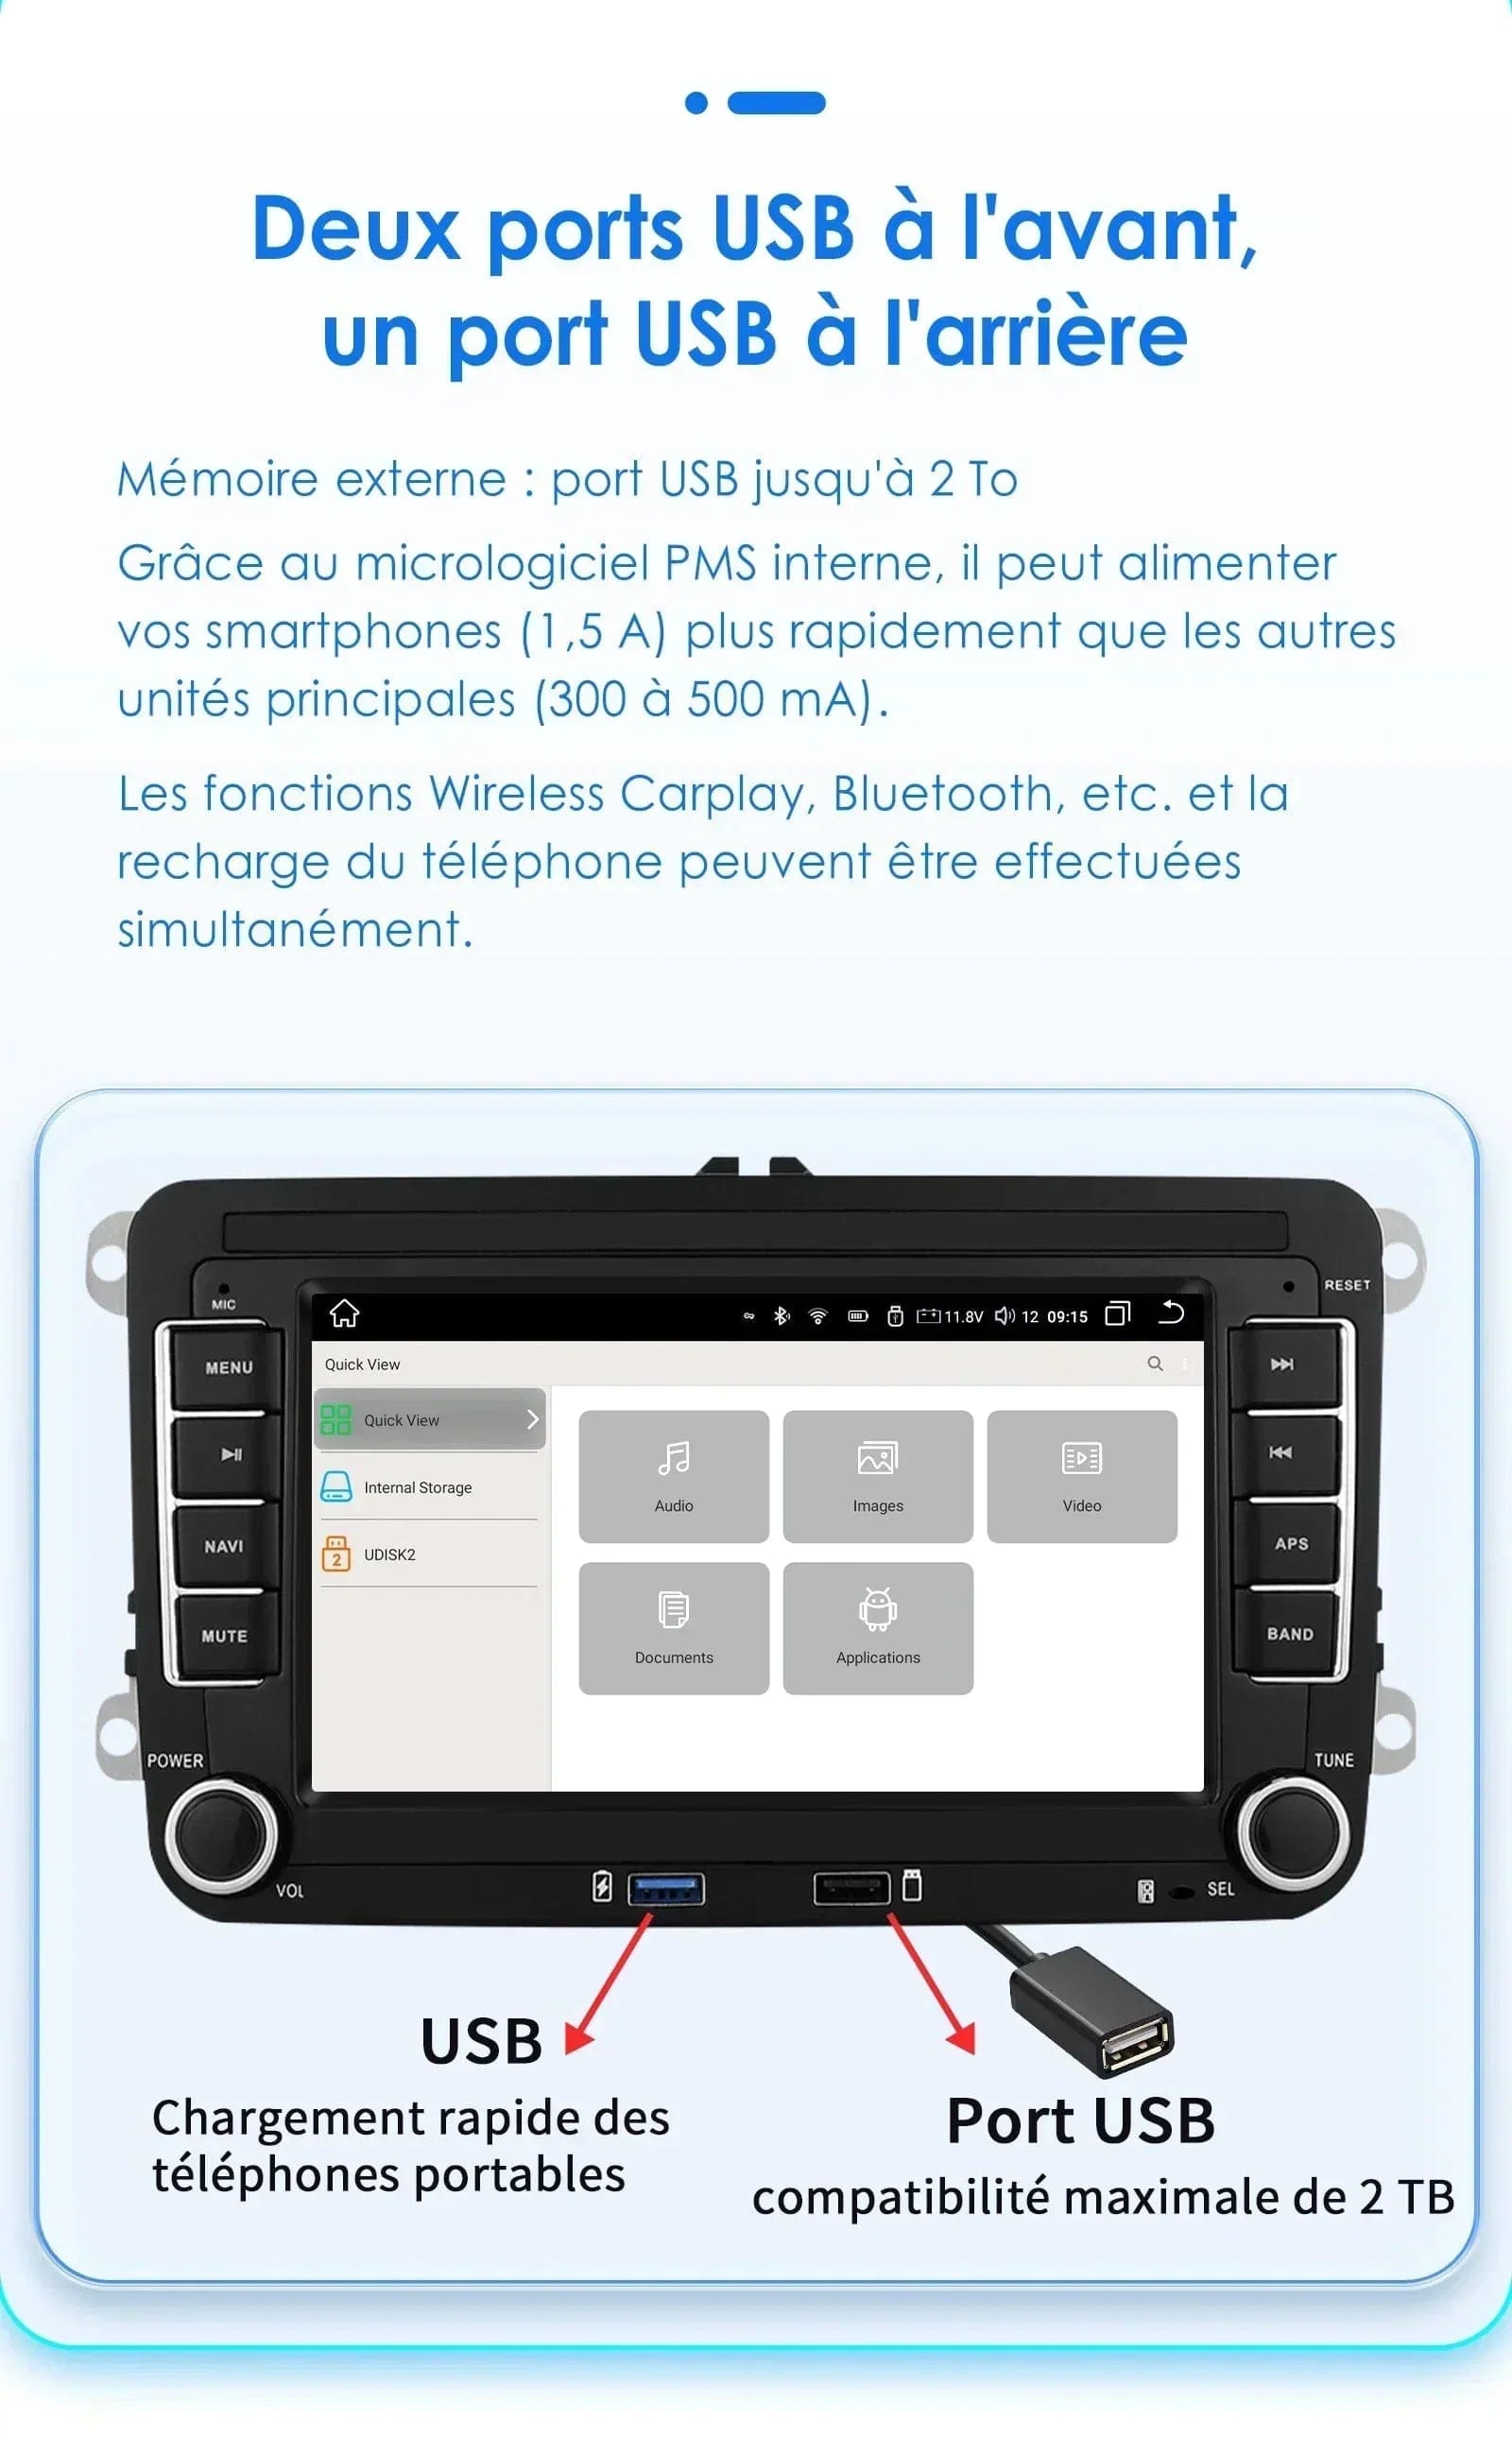 Autoradio connecté Android Auto et Apple CarPlay pour Volkswagen VW Amarok (2010 à 2013)